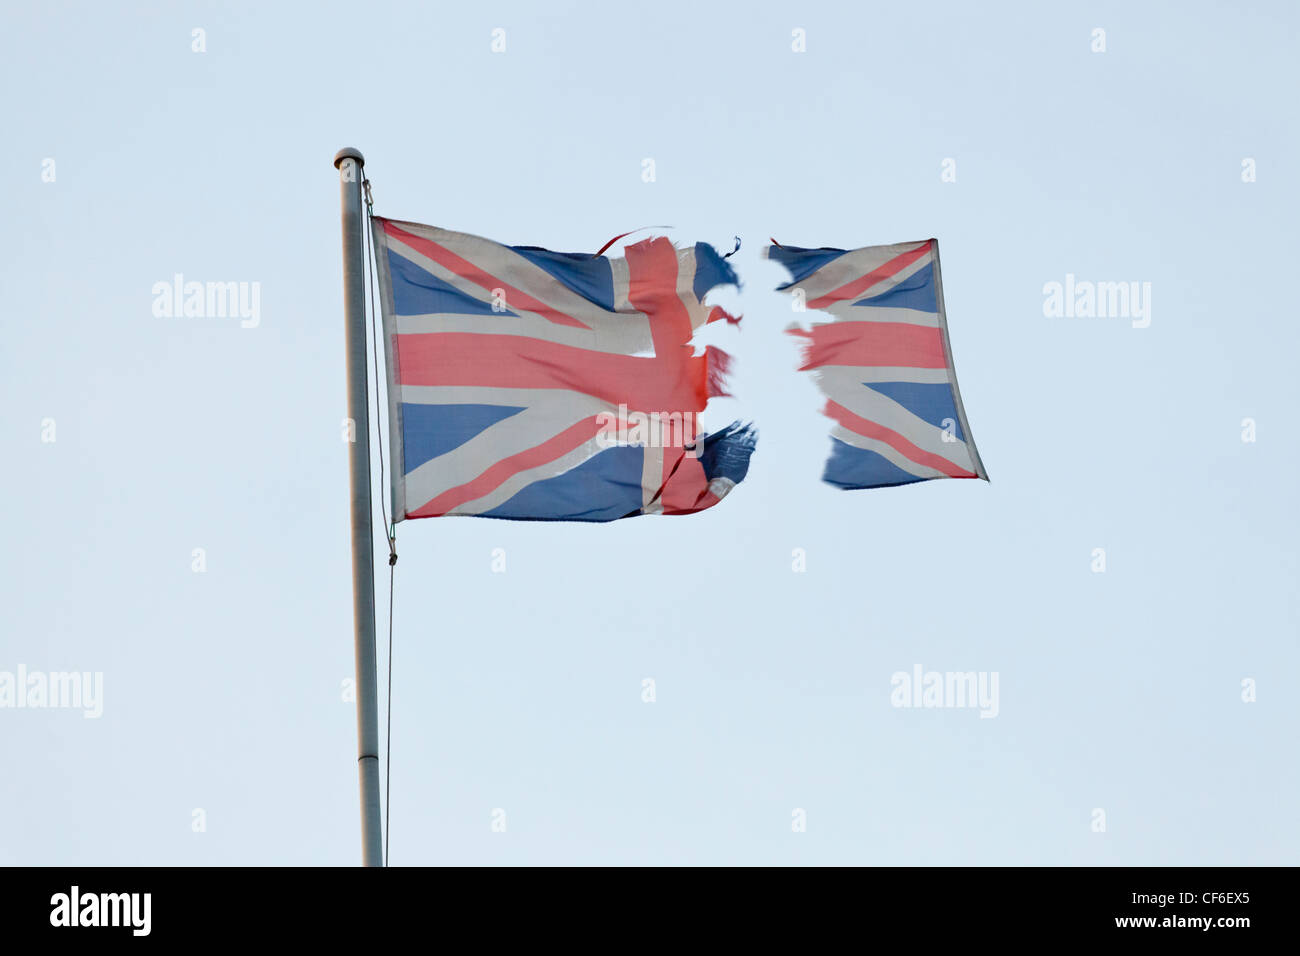 Zerrissene Union Jack. Zerrissene britische Flagge in zwei Teilen mit einem davon fliegenden Abschnitt, was auf ein Konzept der Unabhängigkeit, Dezentralisierung oder des Brexit hindeutet Stockfoto